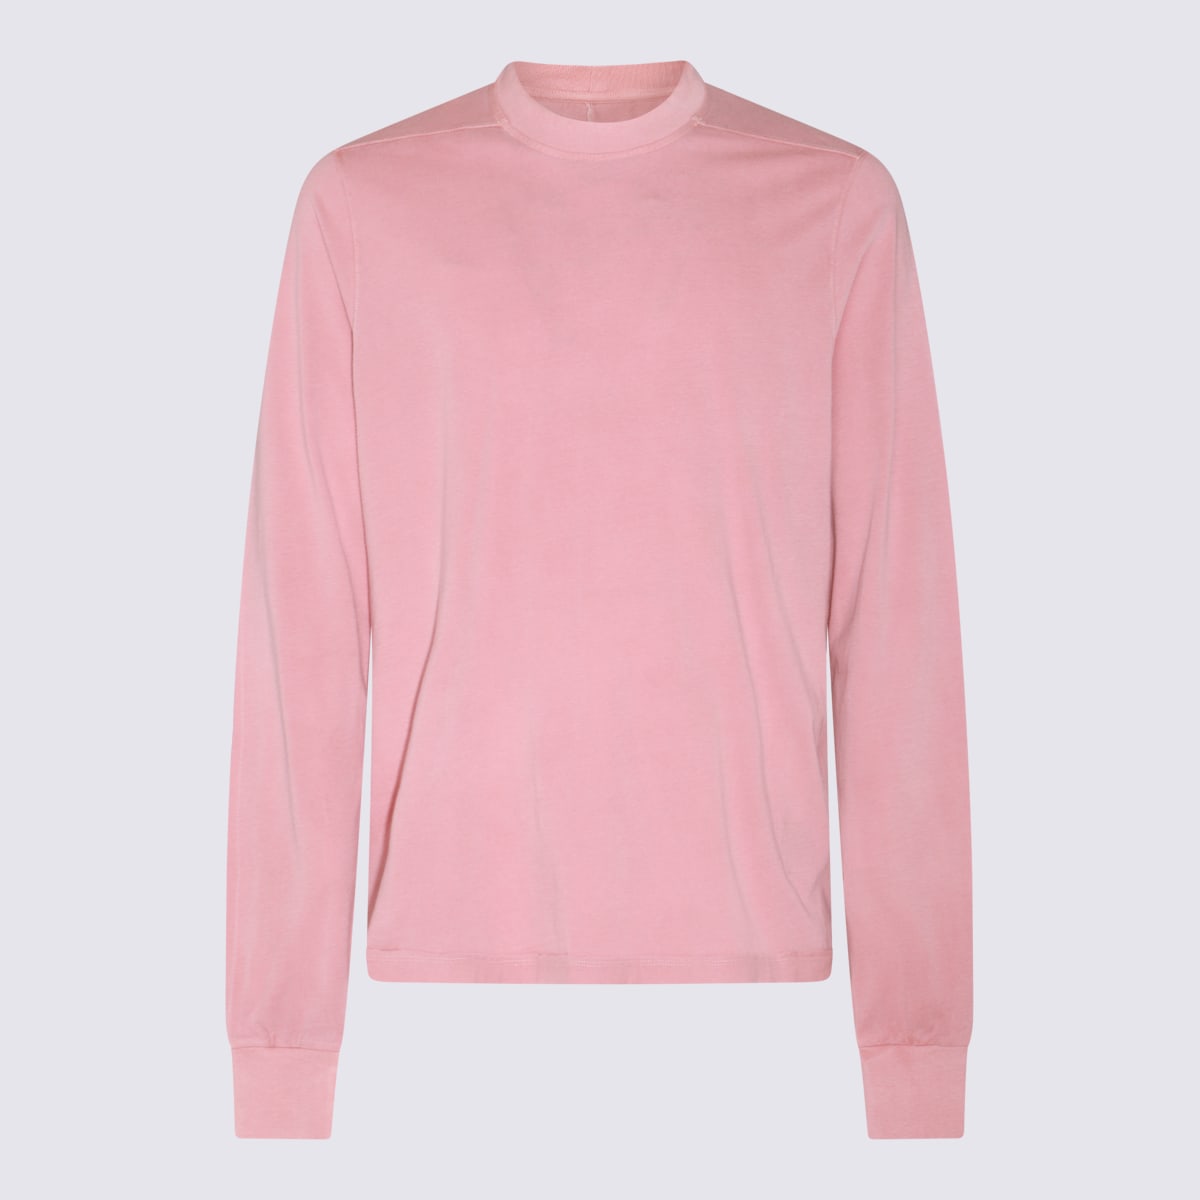 Drkshdw Pink Cotton Sweatshirt